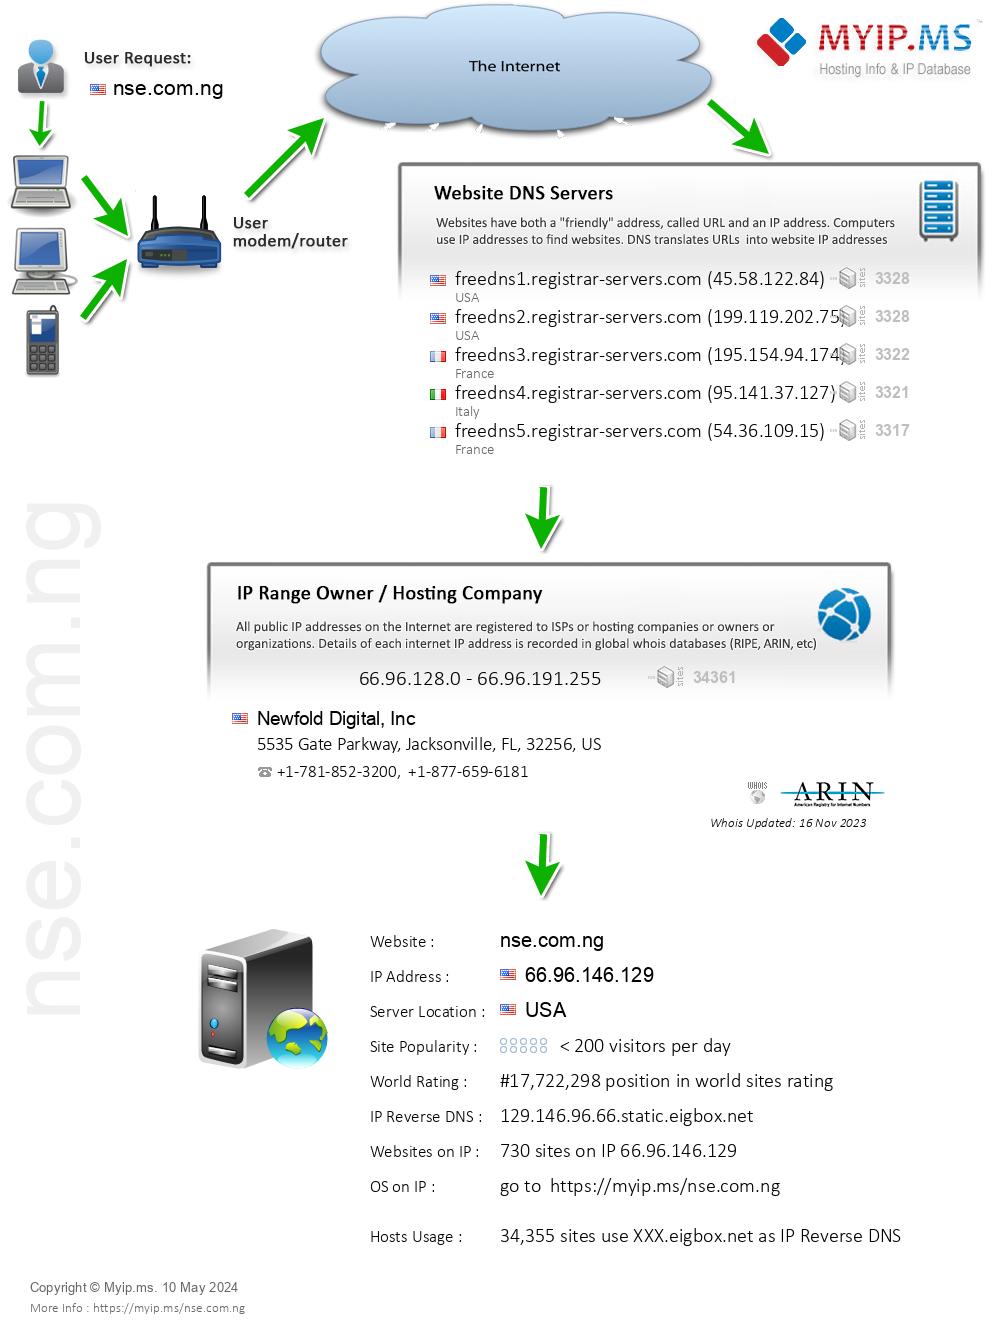 Nse.com.ng - Website Hosting Visual IP Diagram